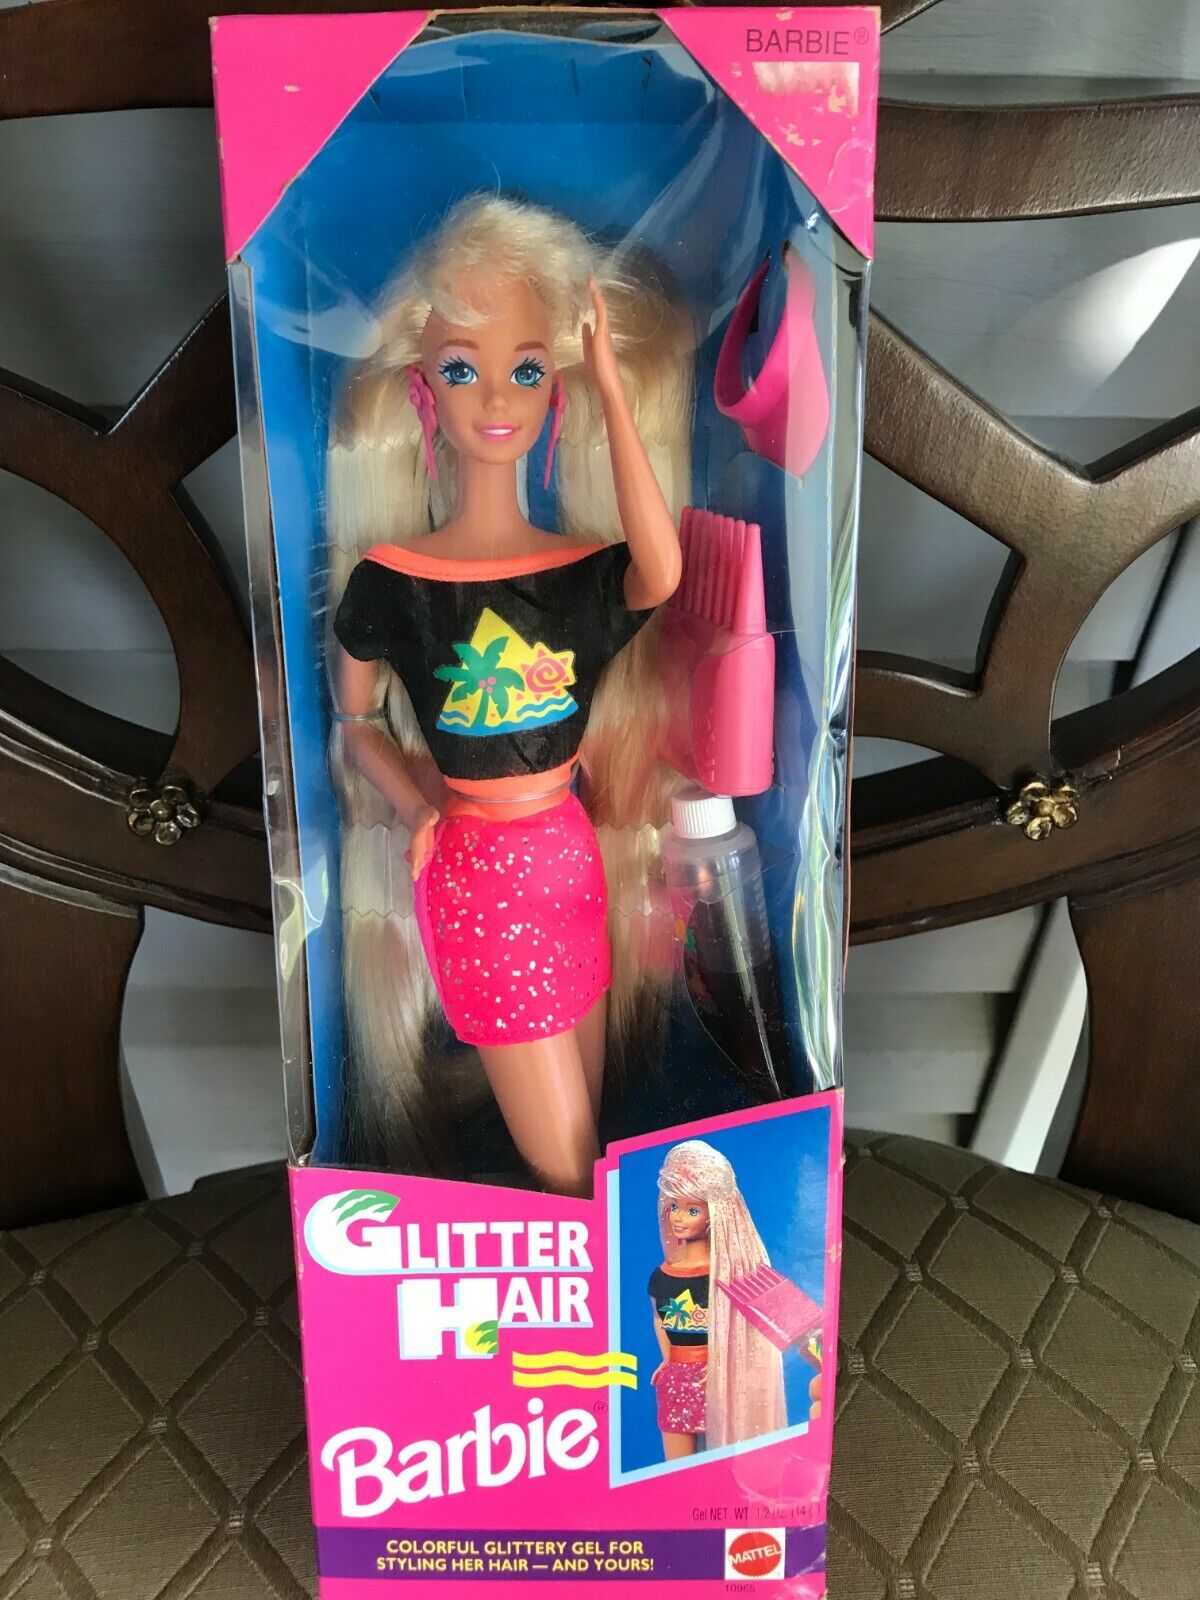 New Vintage Mattel 1993 Glitter Hair Barbie Doll | eBay